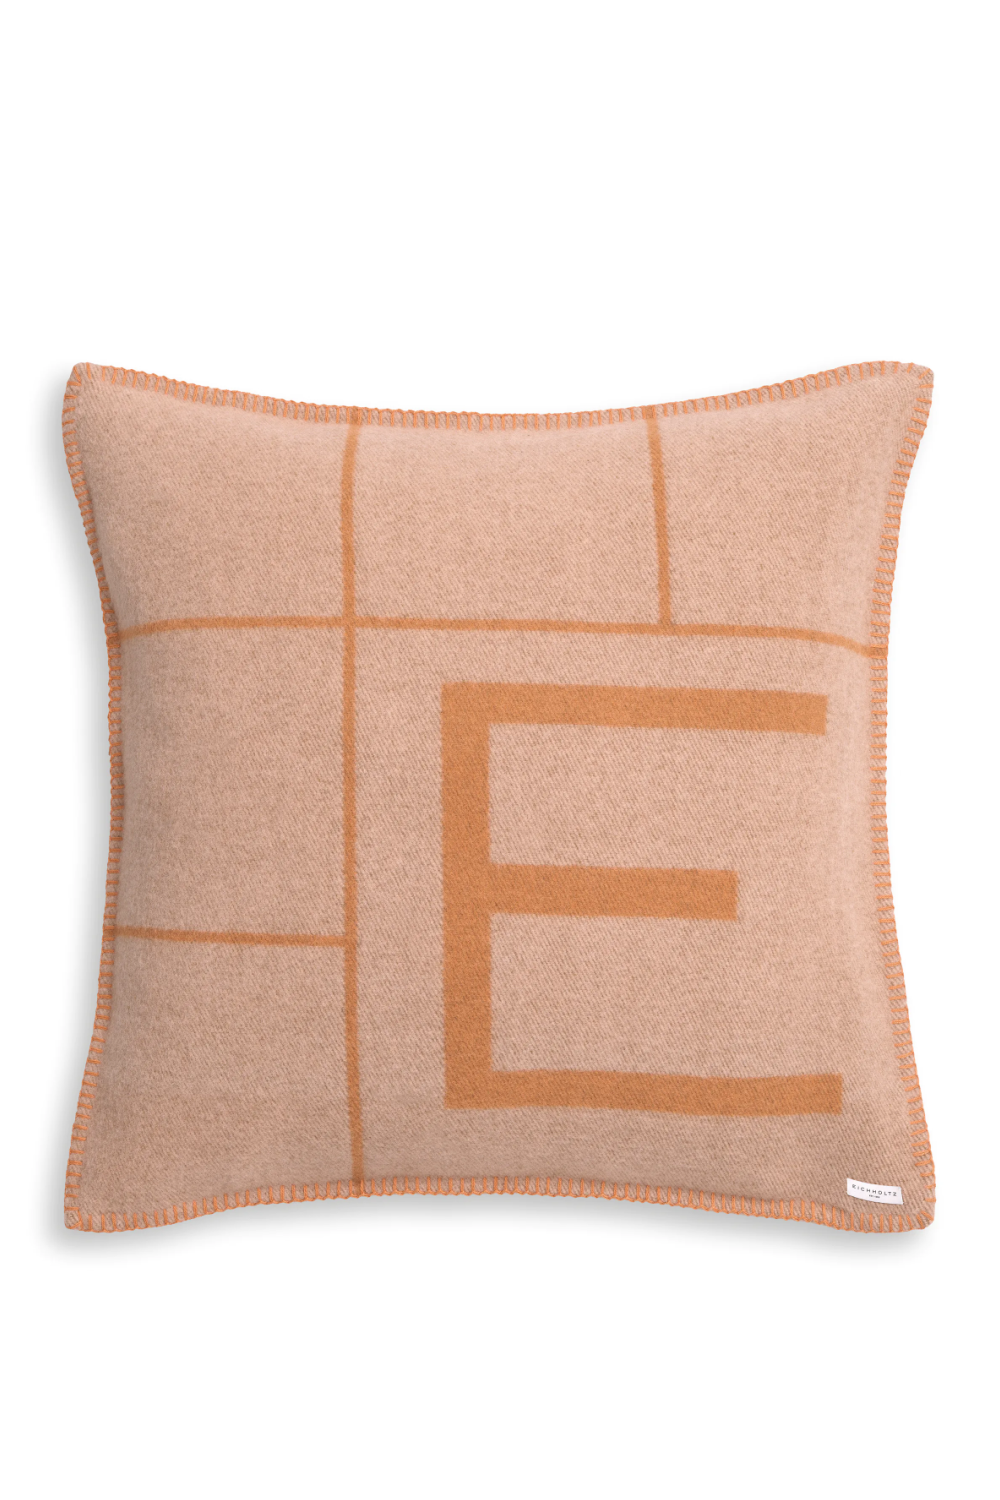 Hemstitch Wool Cushion S | Eichholtz Rhoda | Oroa.com